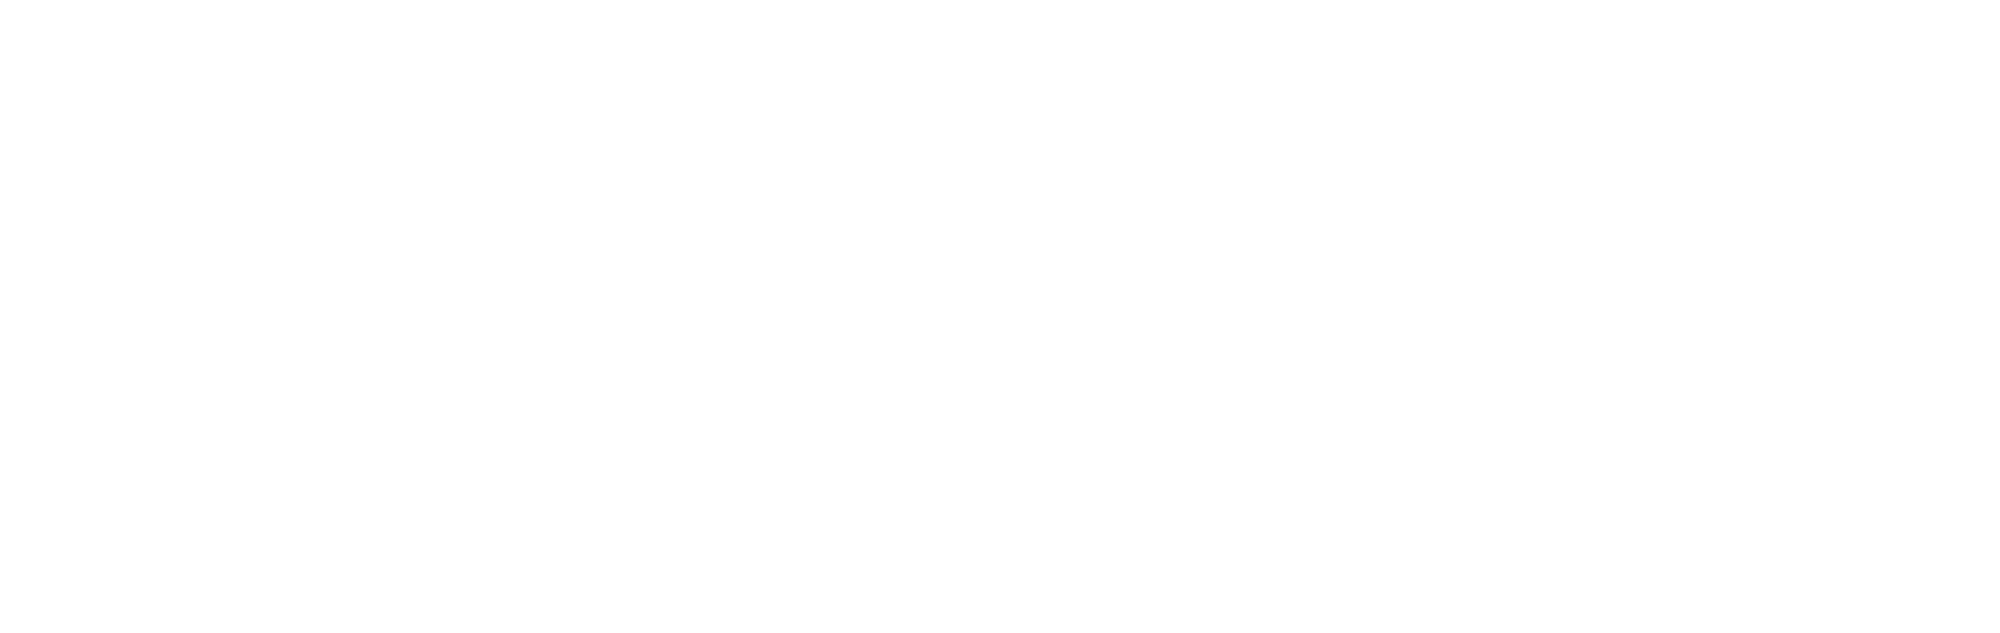 ccc_logo_white